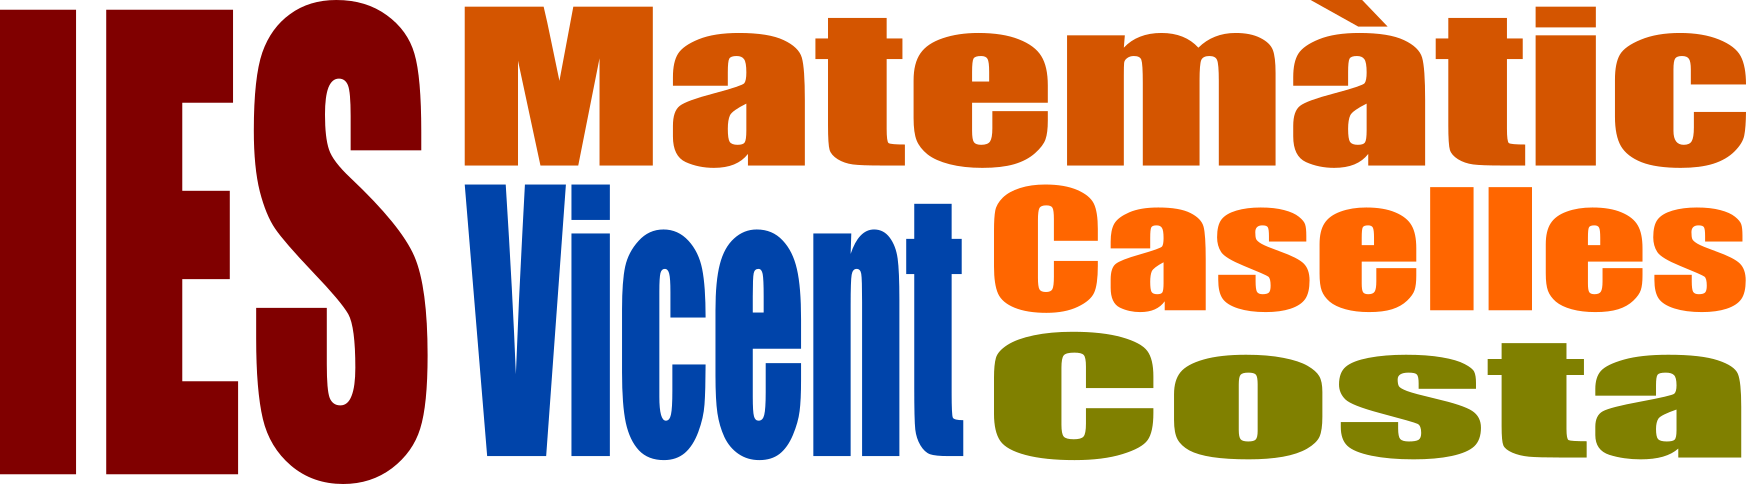 Logo IES MATEMÀTIC VICENT CASELLES COSTA